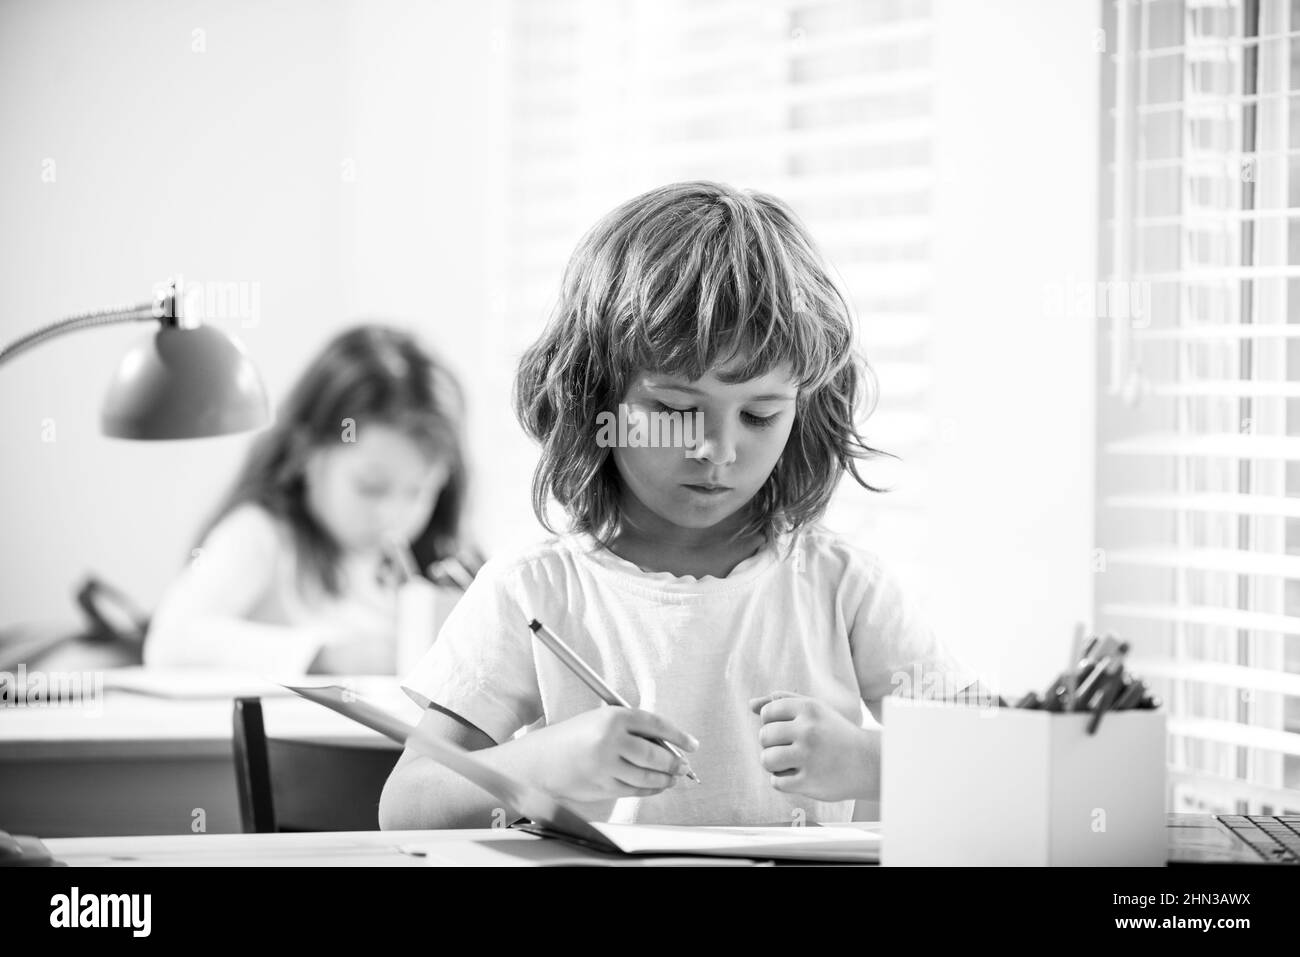 Nette Schüler schreiben am Schreibtisch im Klassenzimmer in der Grundschule. Student Junge macht Test in der Grundschule. Kinder schreiben während des Unterrichts Notizen Stockfoto